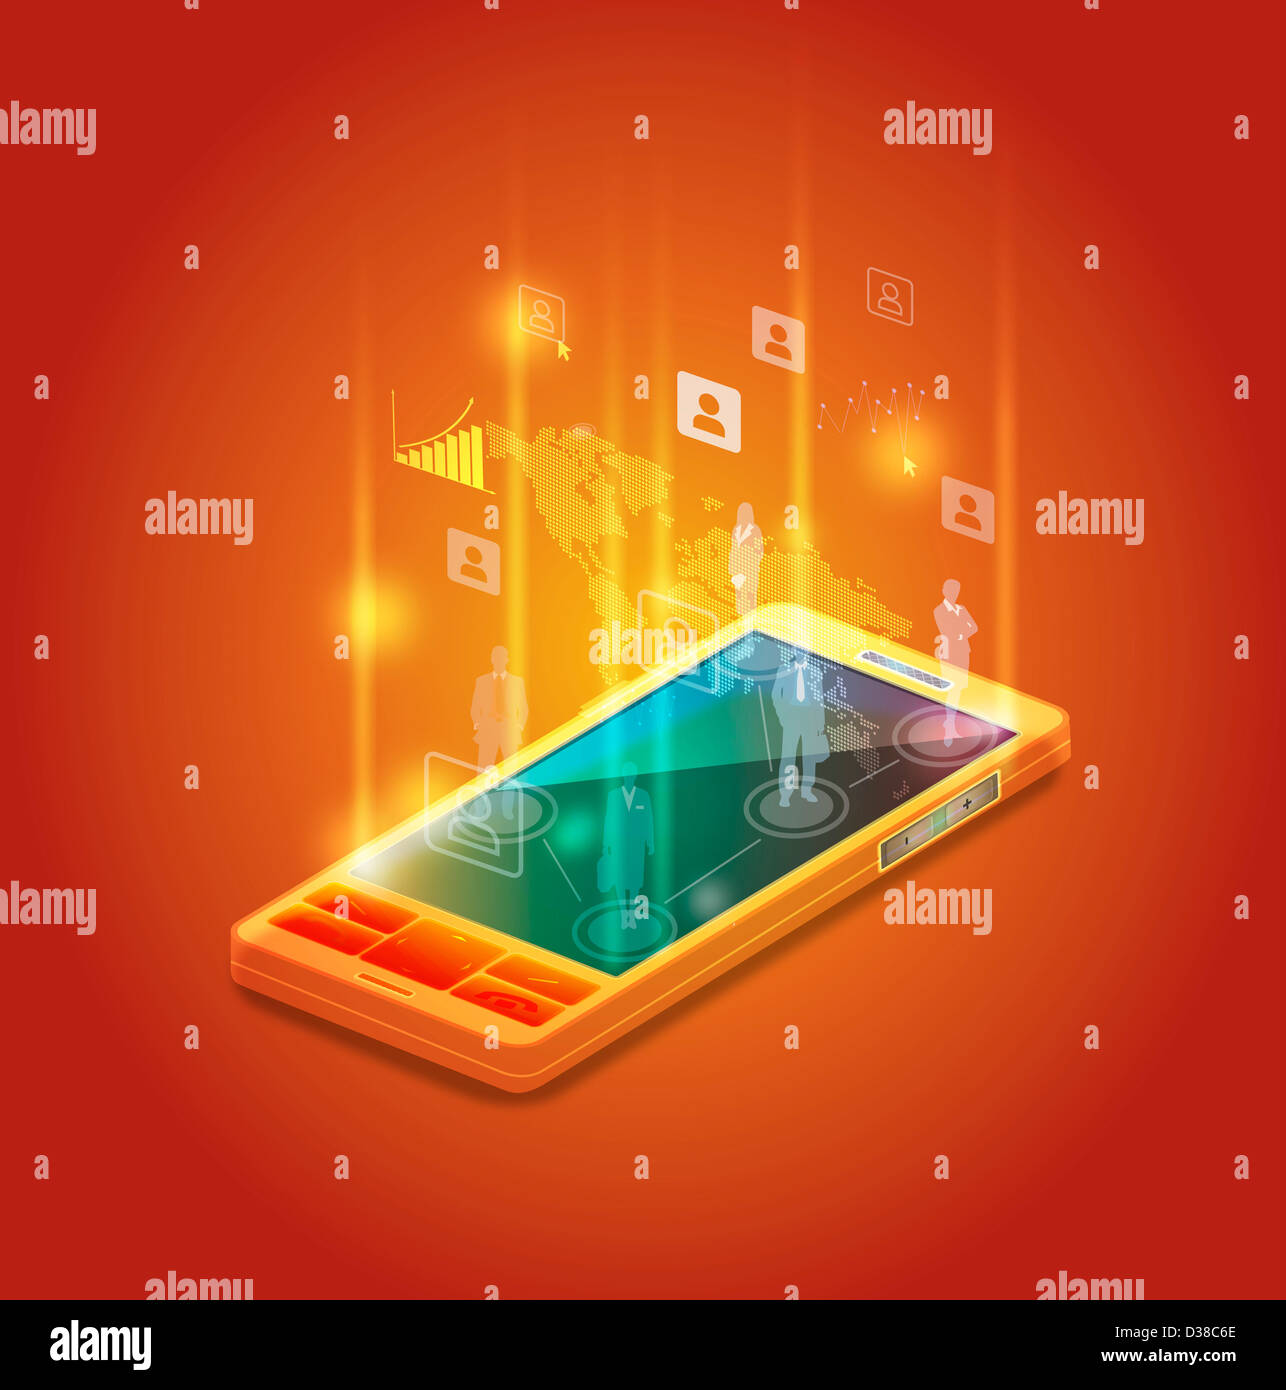 Image d'illustration de téléphone mobile représentant les réseaux d'affaires Banque D'Images